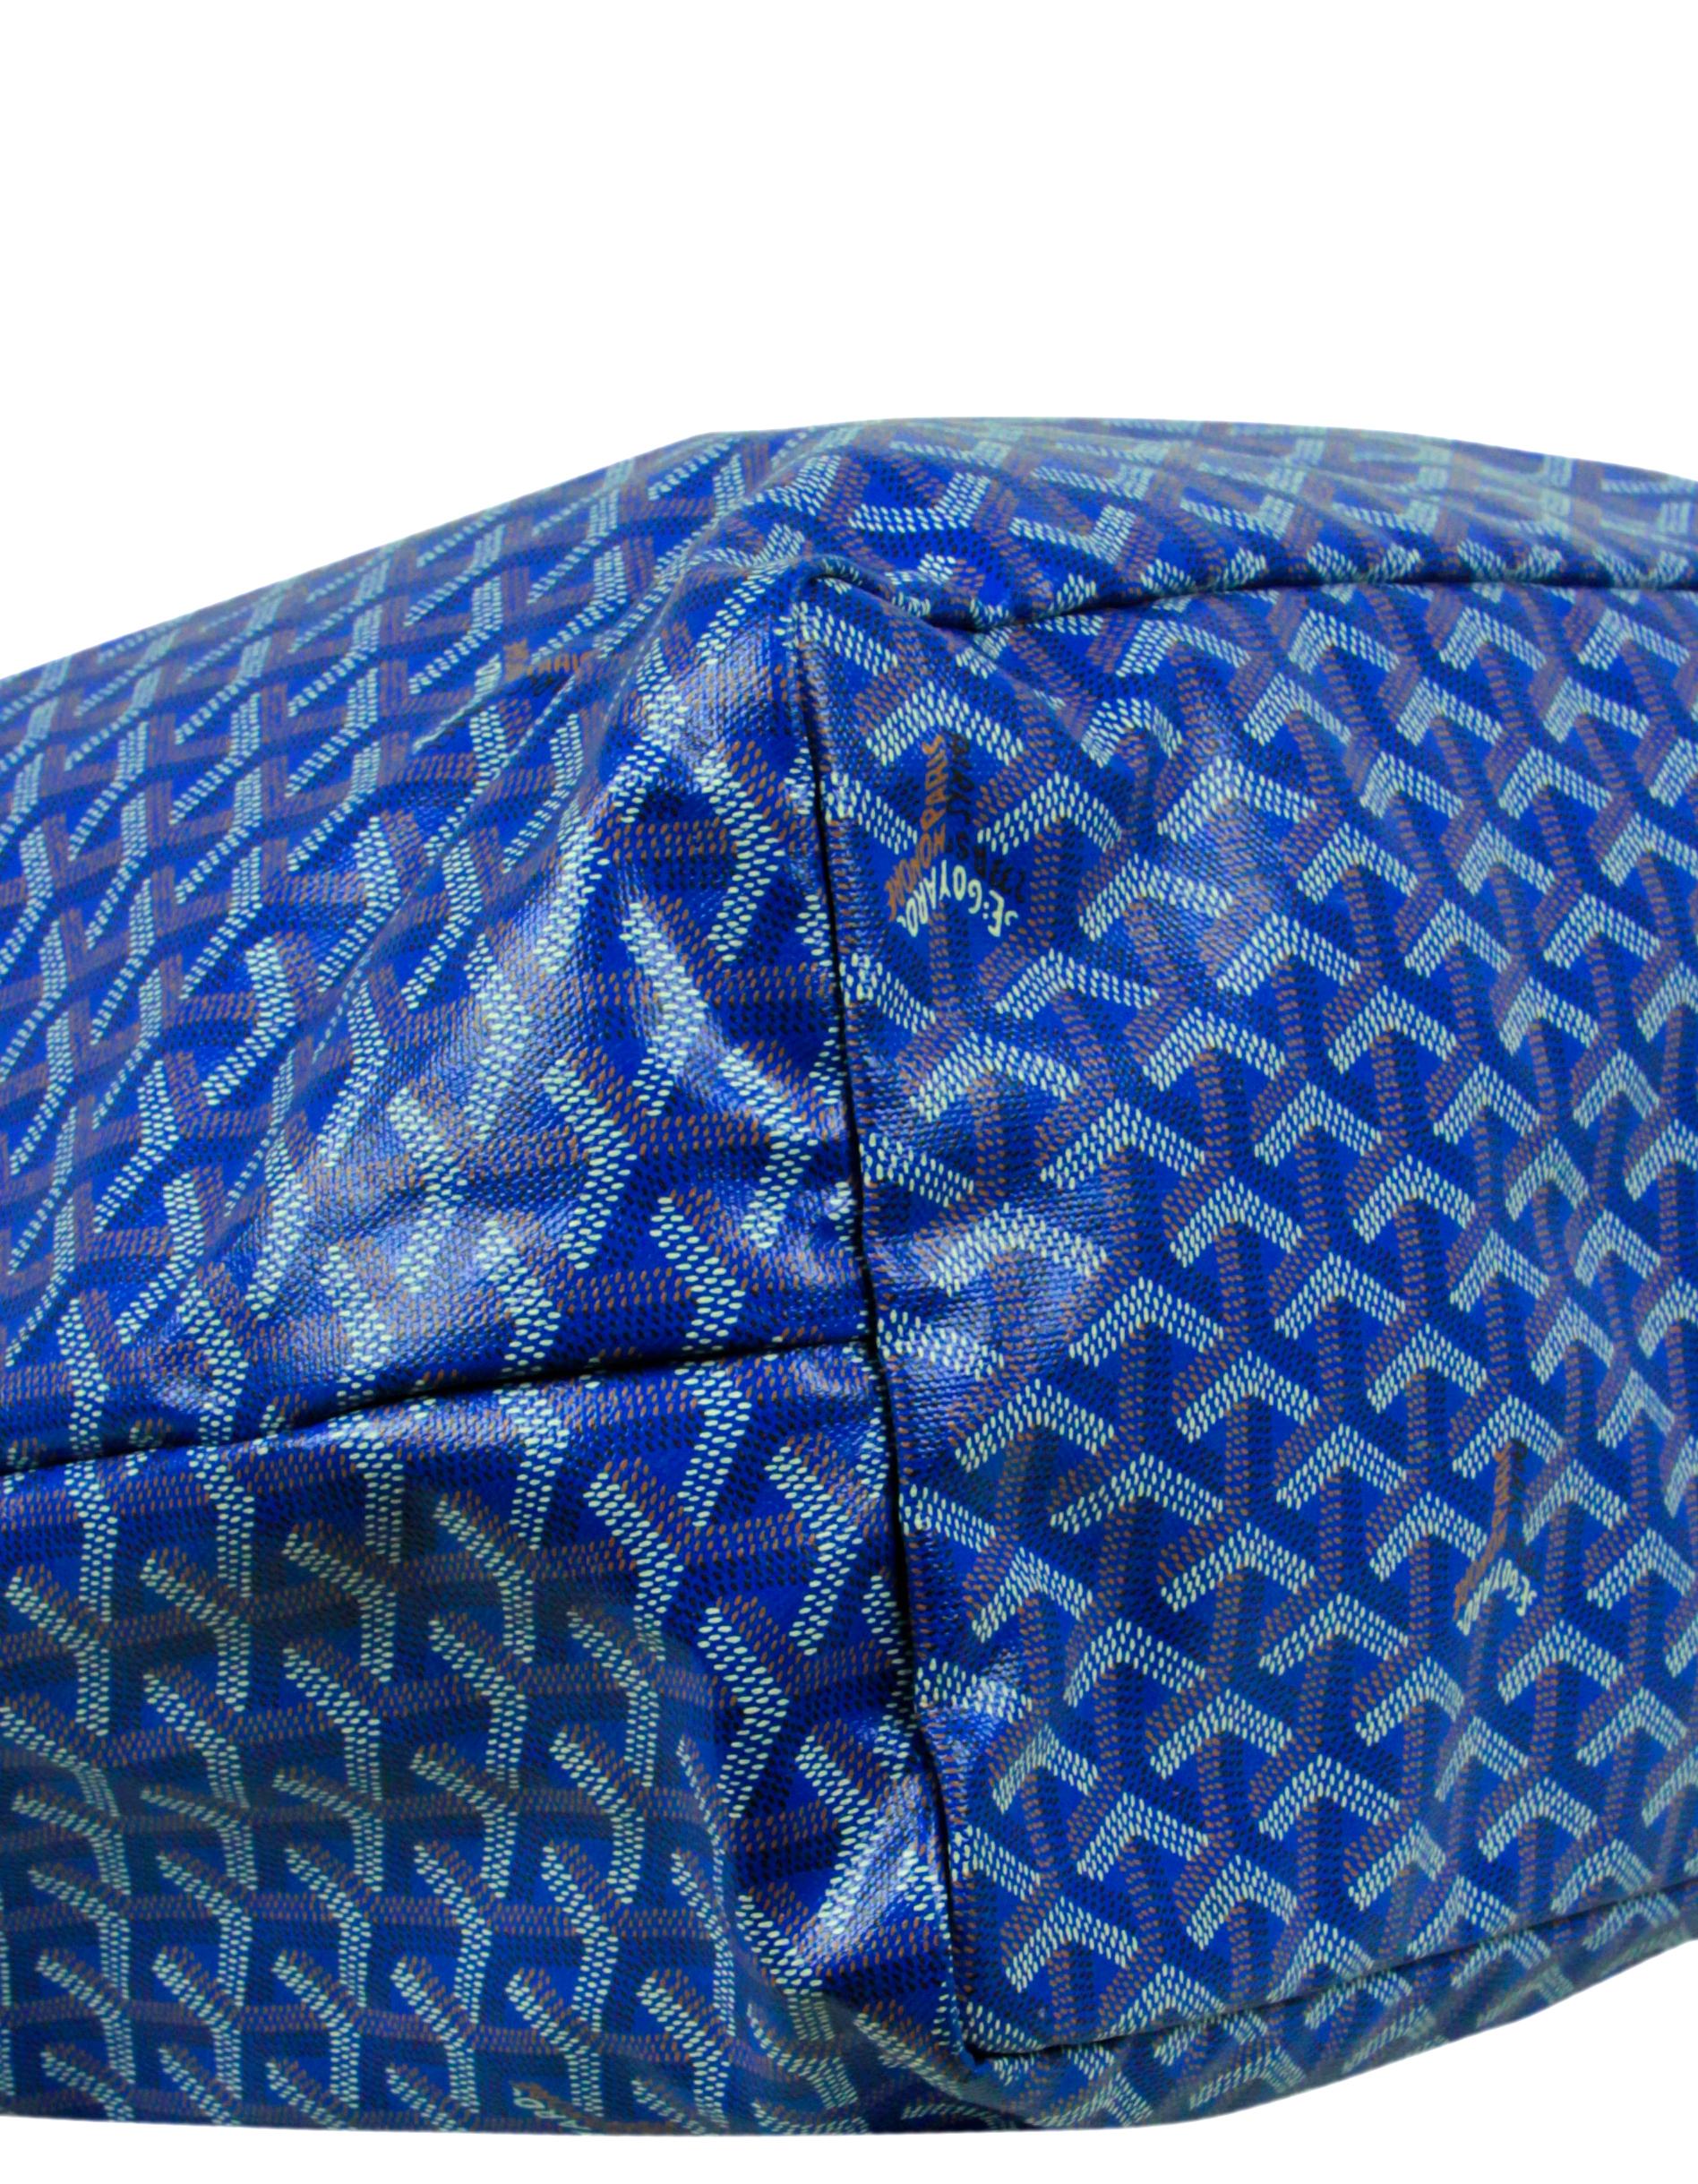  Goyard - Sac cabas Saint Louis GM en toile Goyardine bleue avec fermoir Pour femmes 